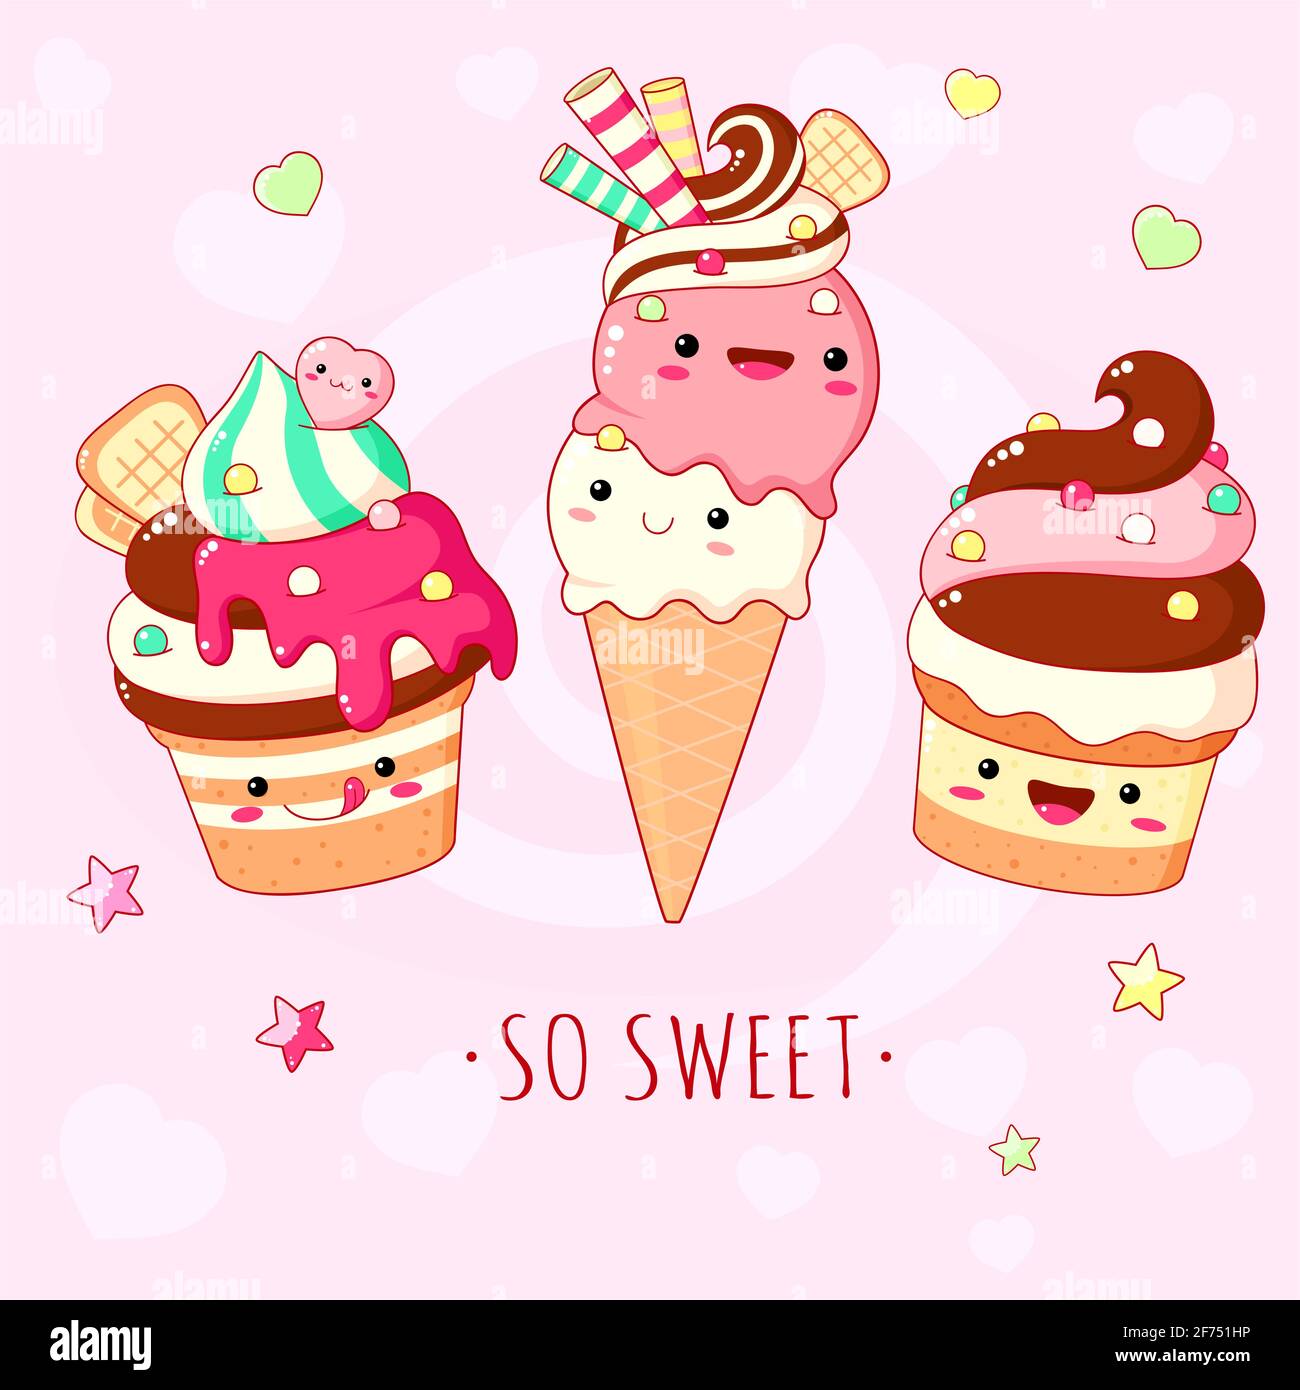 Sfondo divertente con deliziosi cibi dolci - gelato, torta e cupcake. Dessert in stile kawaii con viso sorridente e guance rosa. Iscrizione così dolce Illustrazione Vettoriale